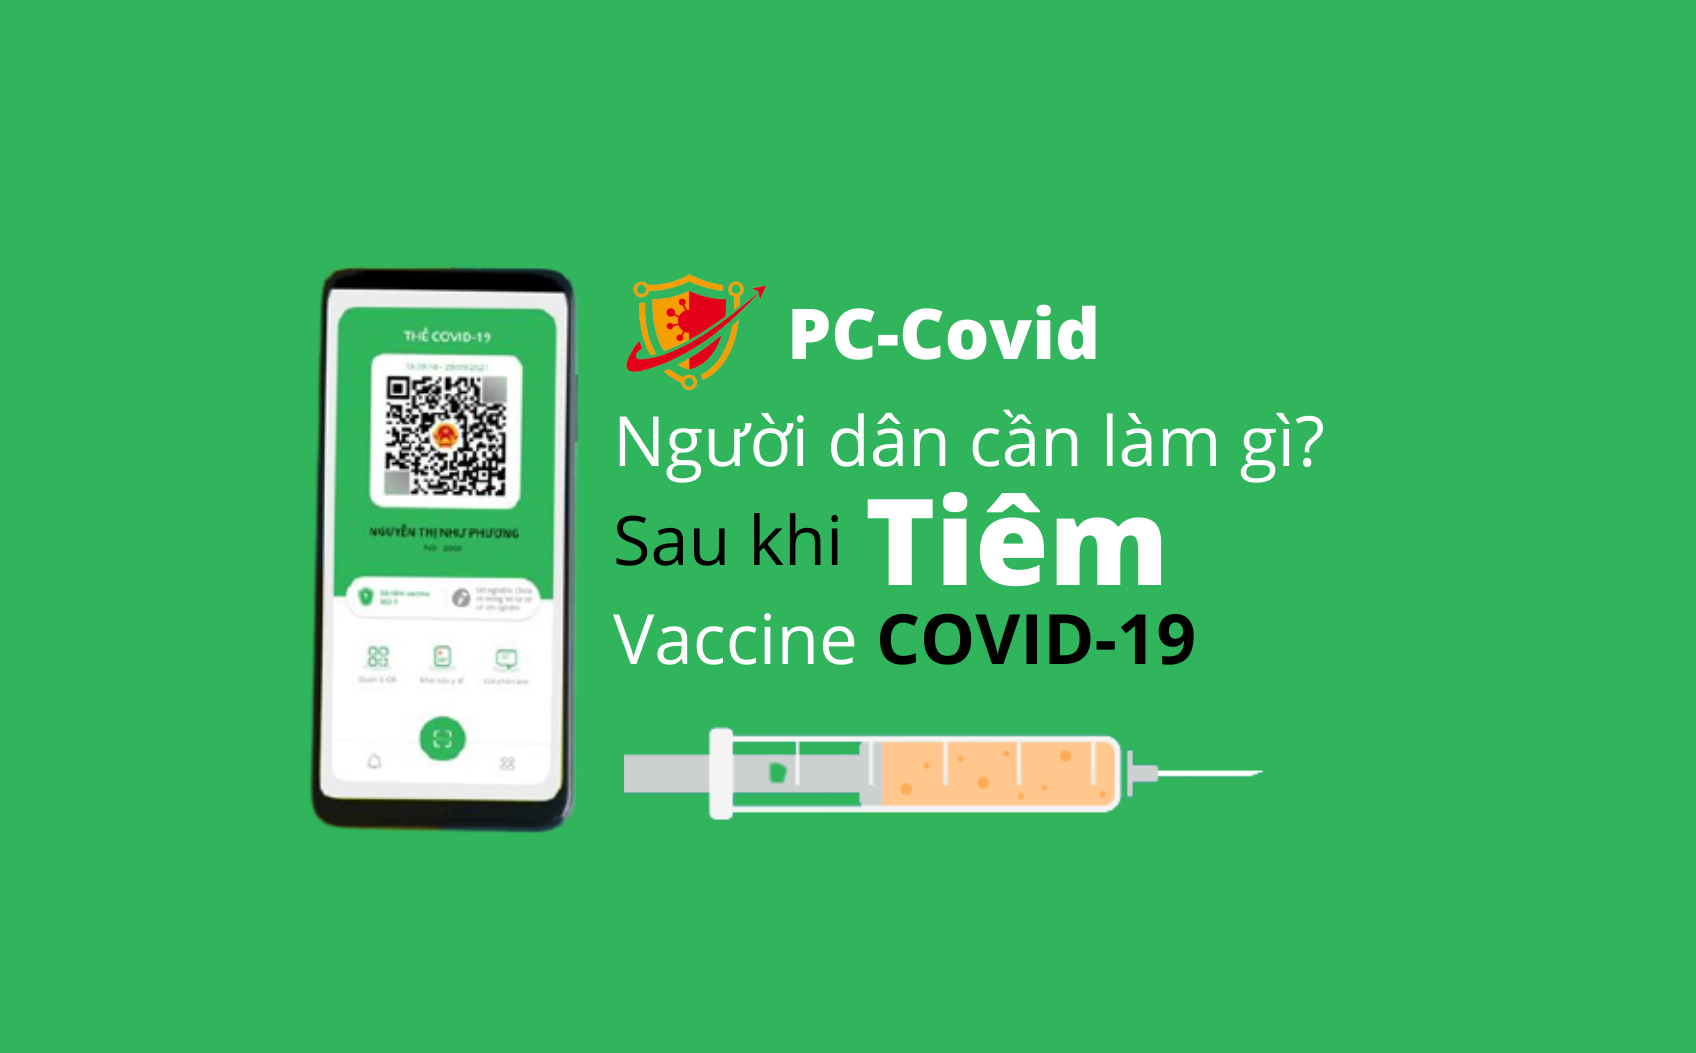 PC-Covid: Cách tạo mã QR cá nhân; đã tiêm vắc-xin nhưng chưa được cập nhật thì làm gì?